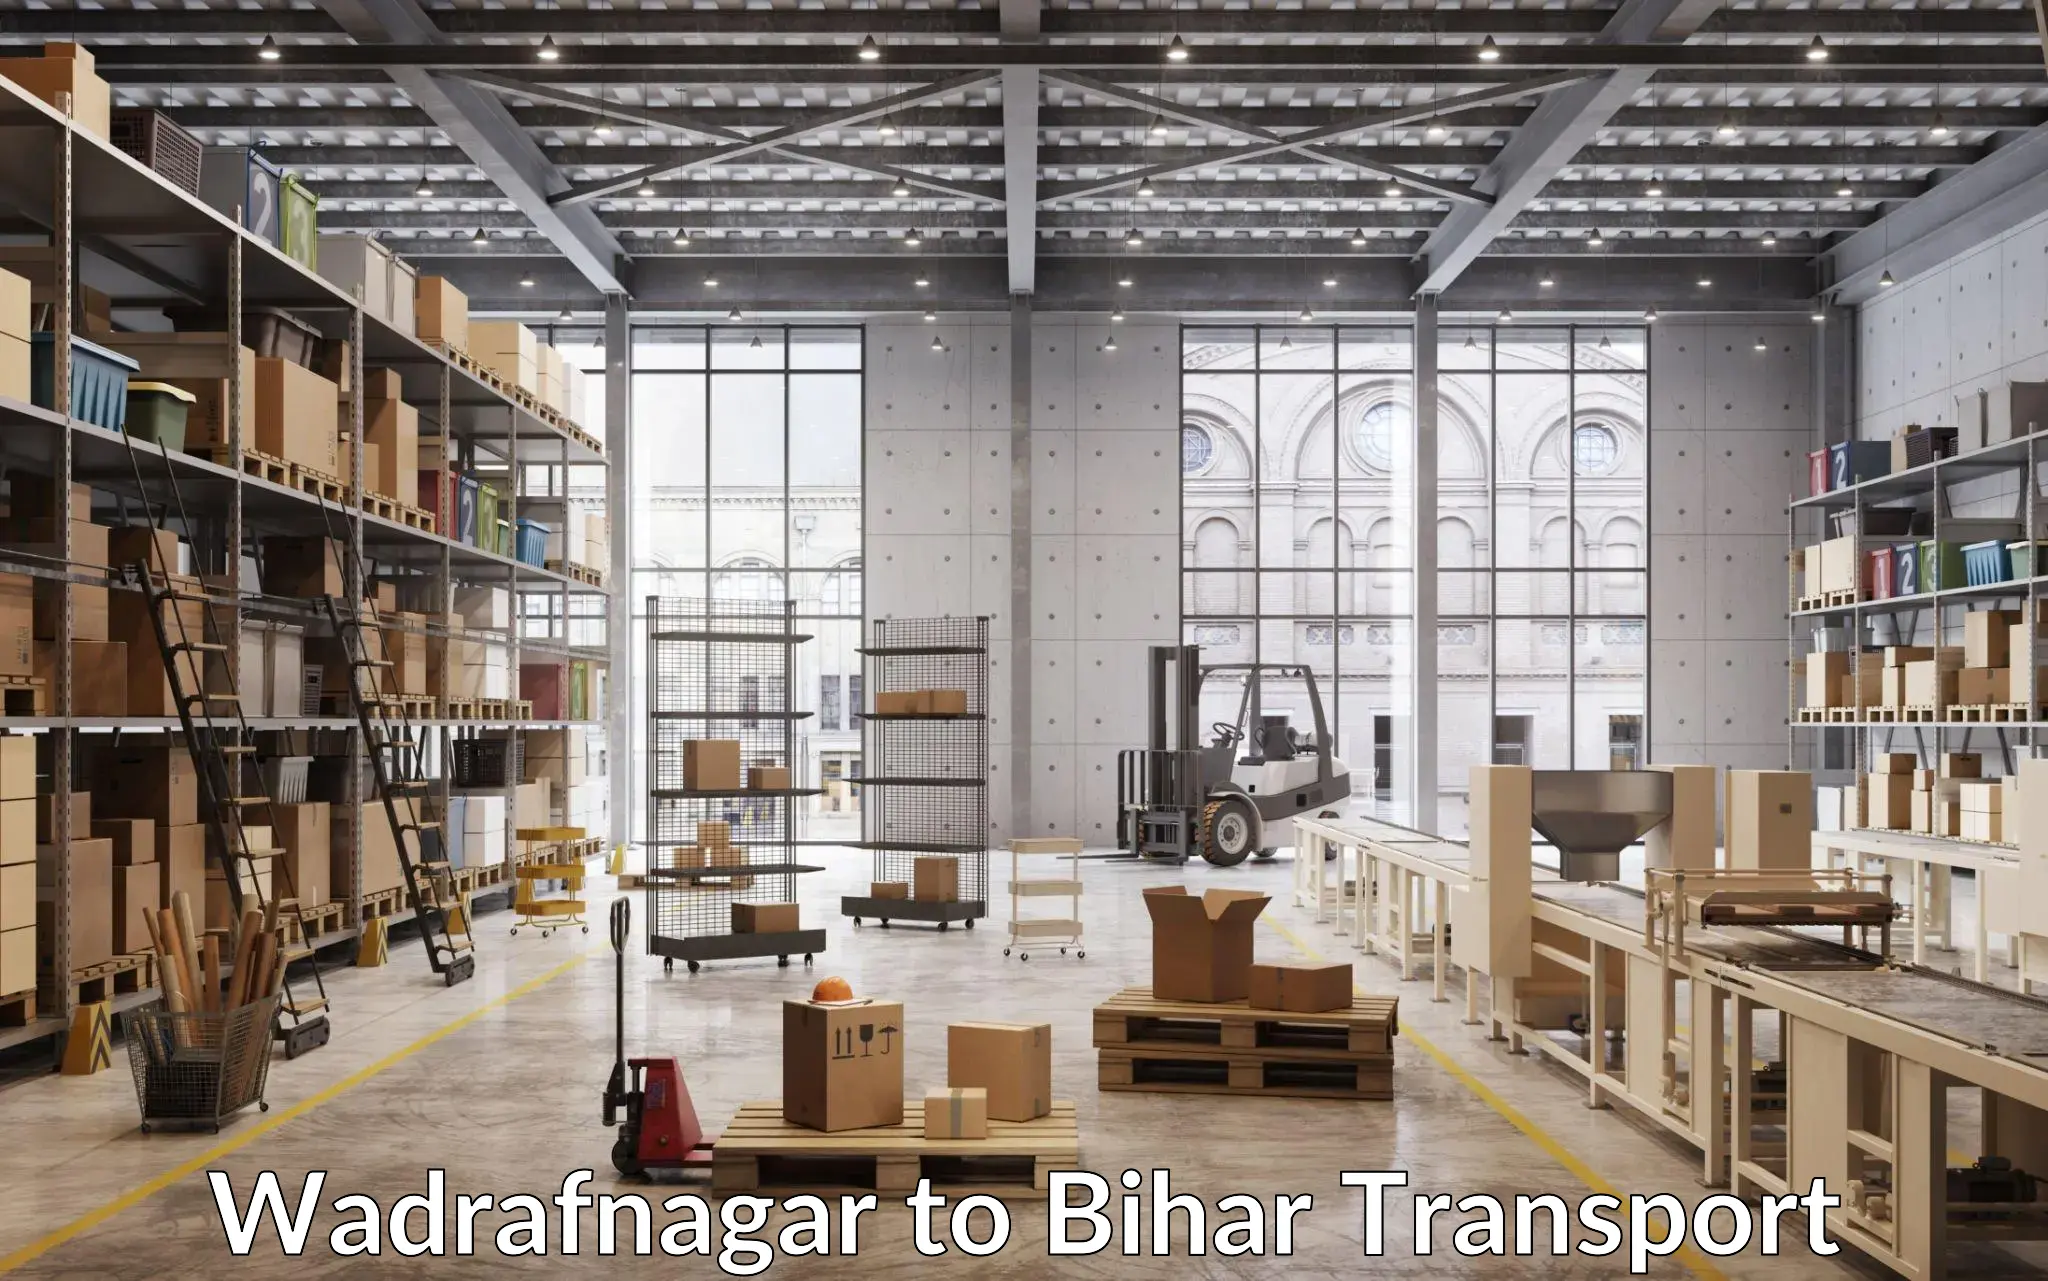 Vehicle transport services in Wadrafnagar to Bihar